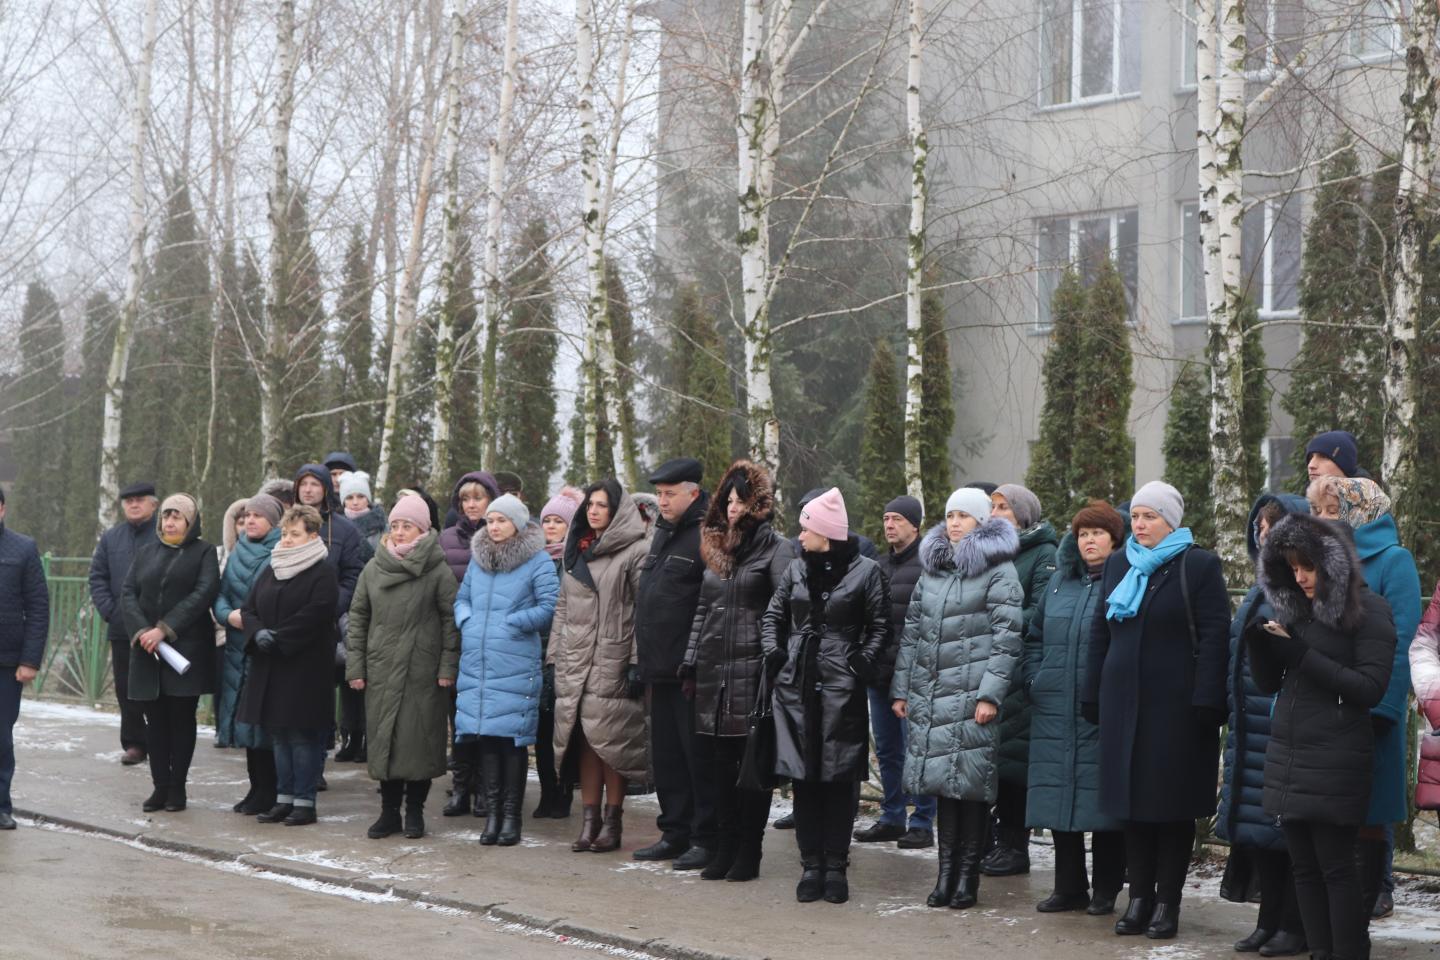 http://dunrada.gov.ua/uploadfile/archive_news/2019/12/13/2019-12-13_8008/images/images-5393.jpg